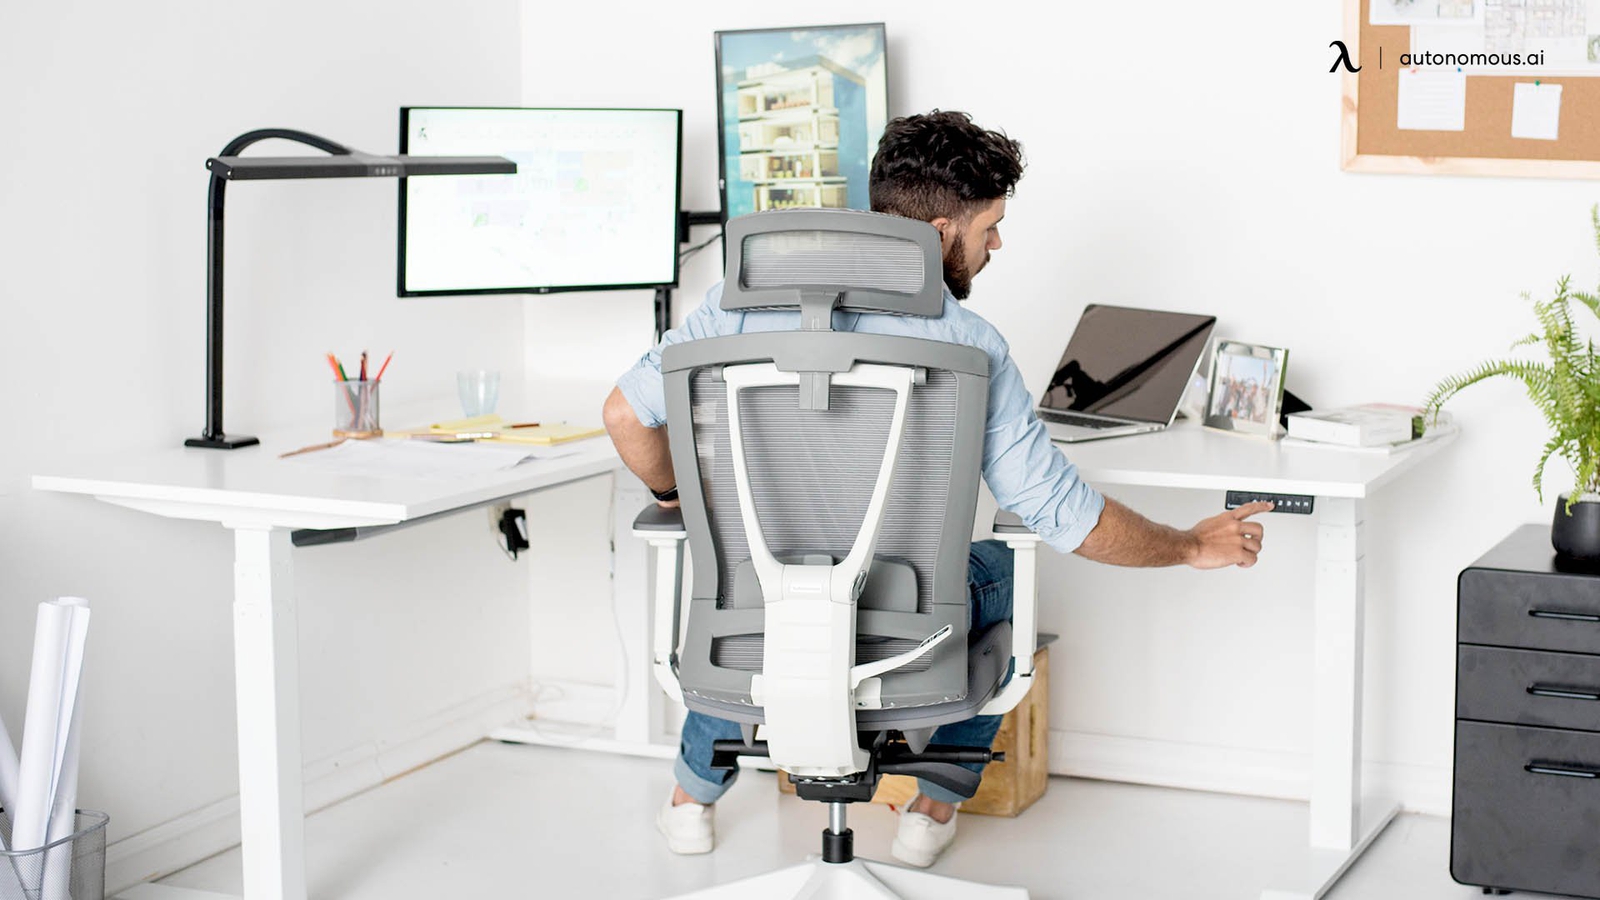 4 Pieces of High Tech Office Furniture - Modern Office Desk